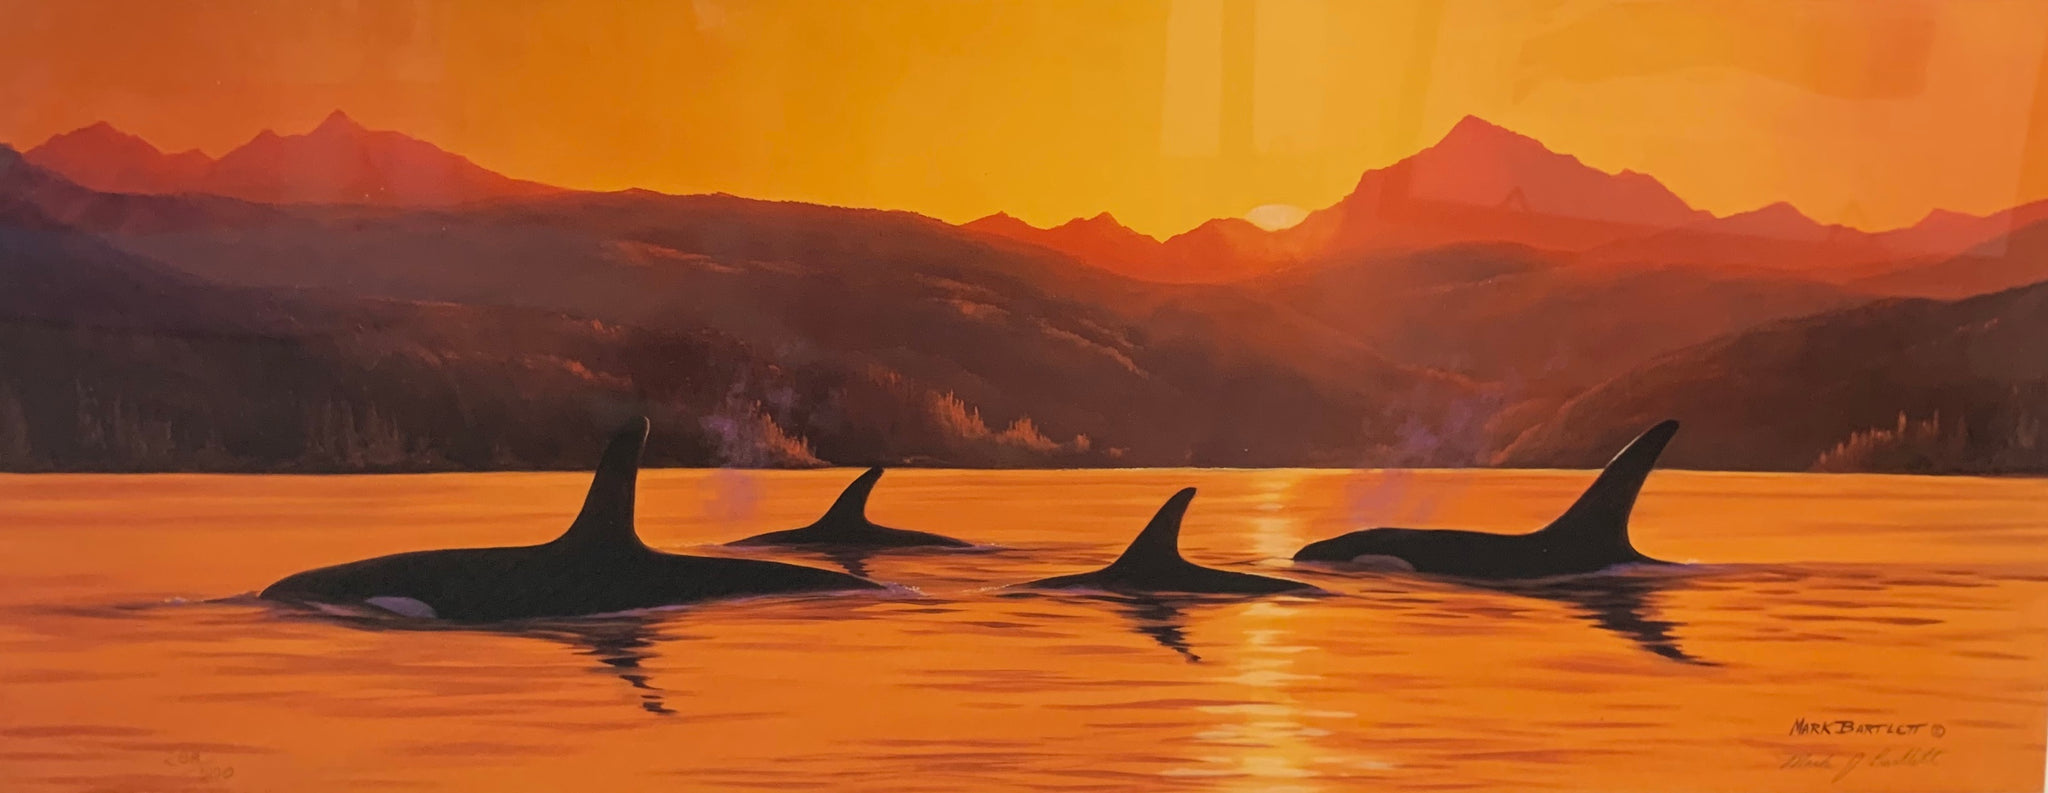 ORCAS AT DUSK